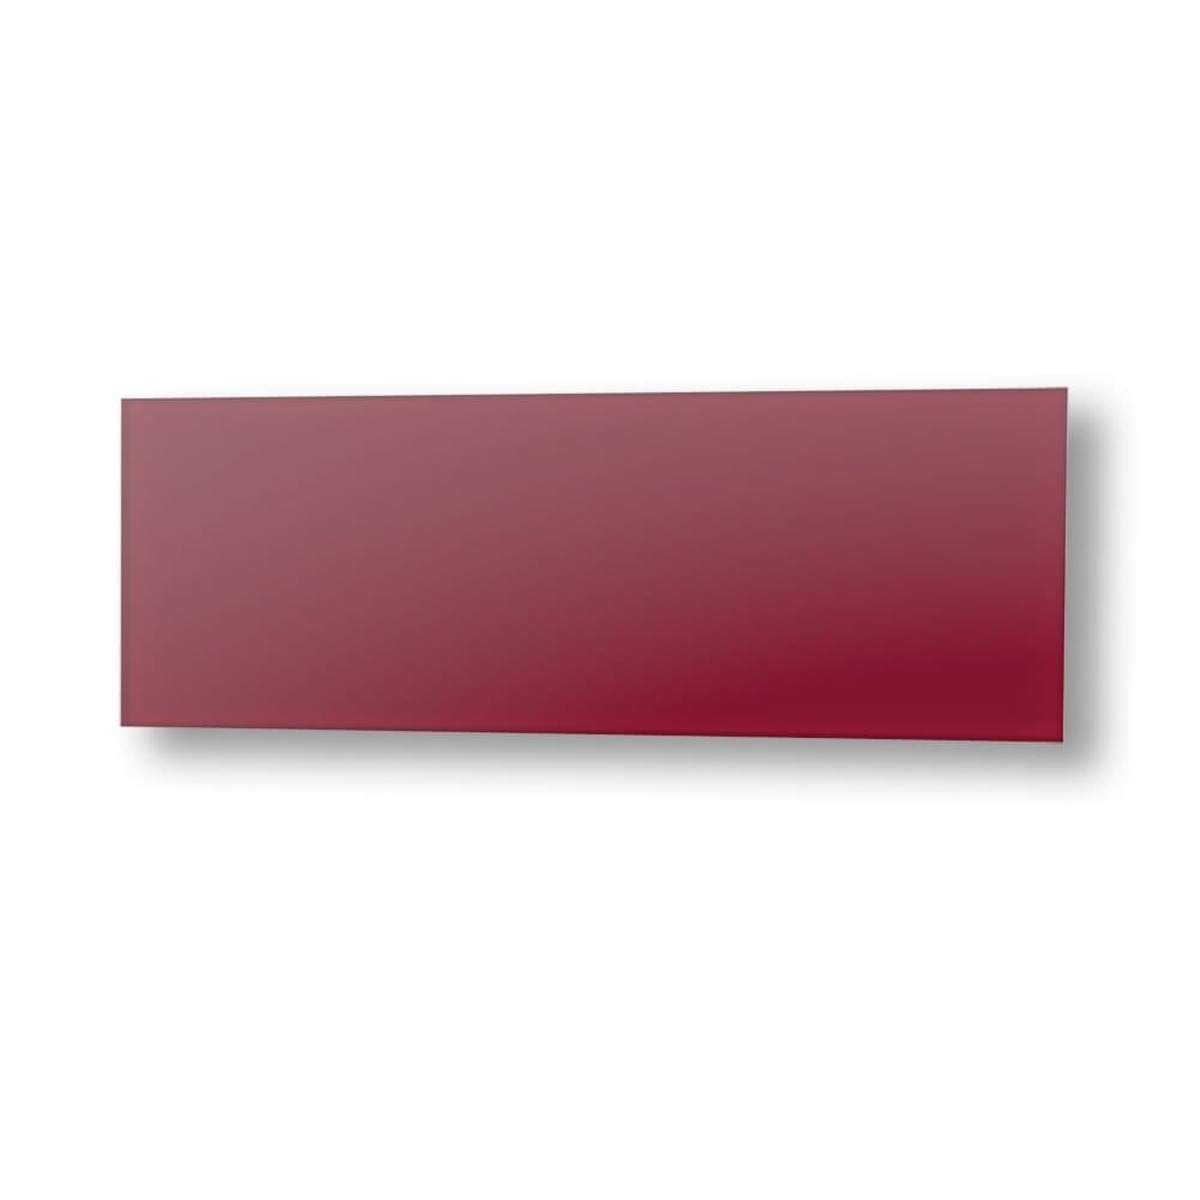 Topný panel Fenix GS+ 125x65 cm skleněný červená 11V5437797 Fenix